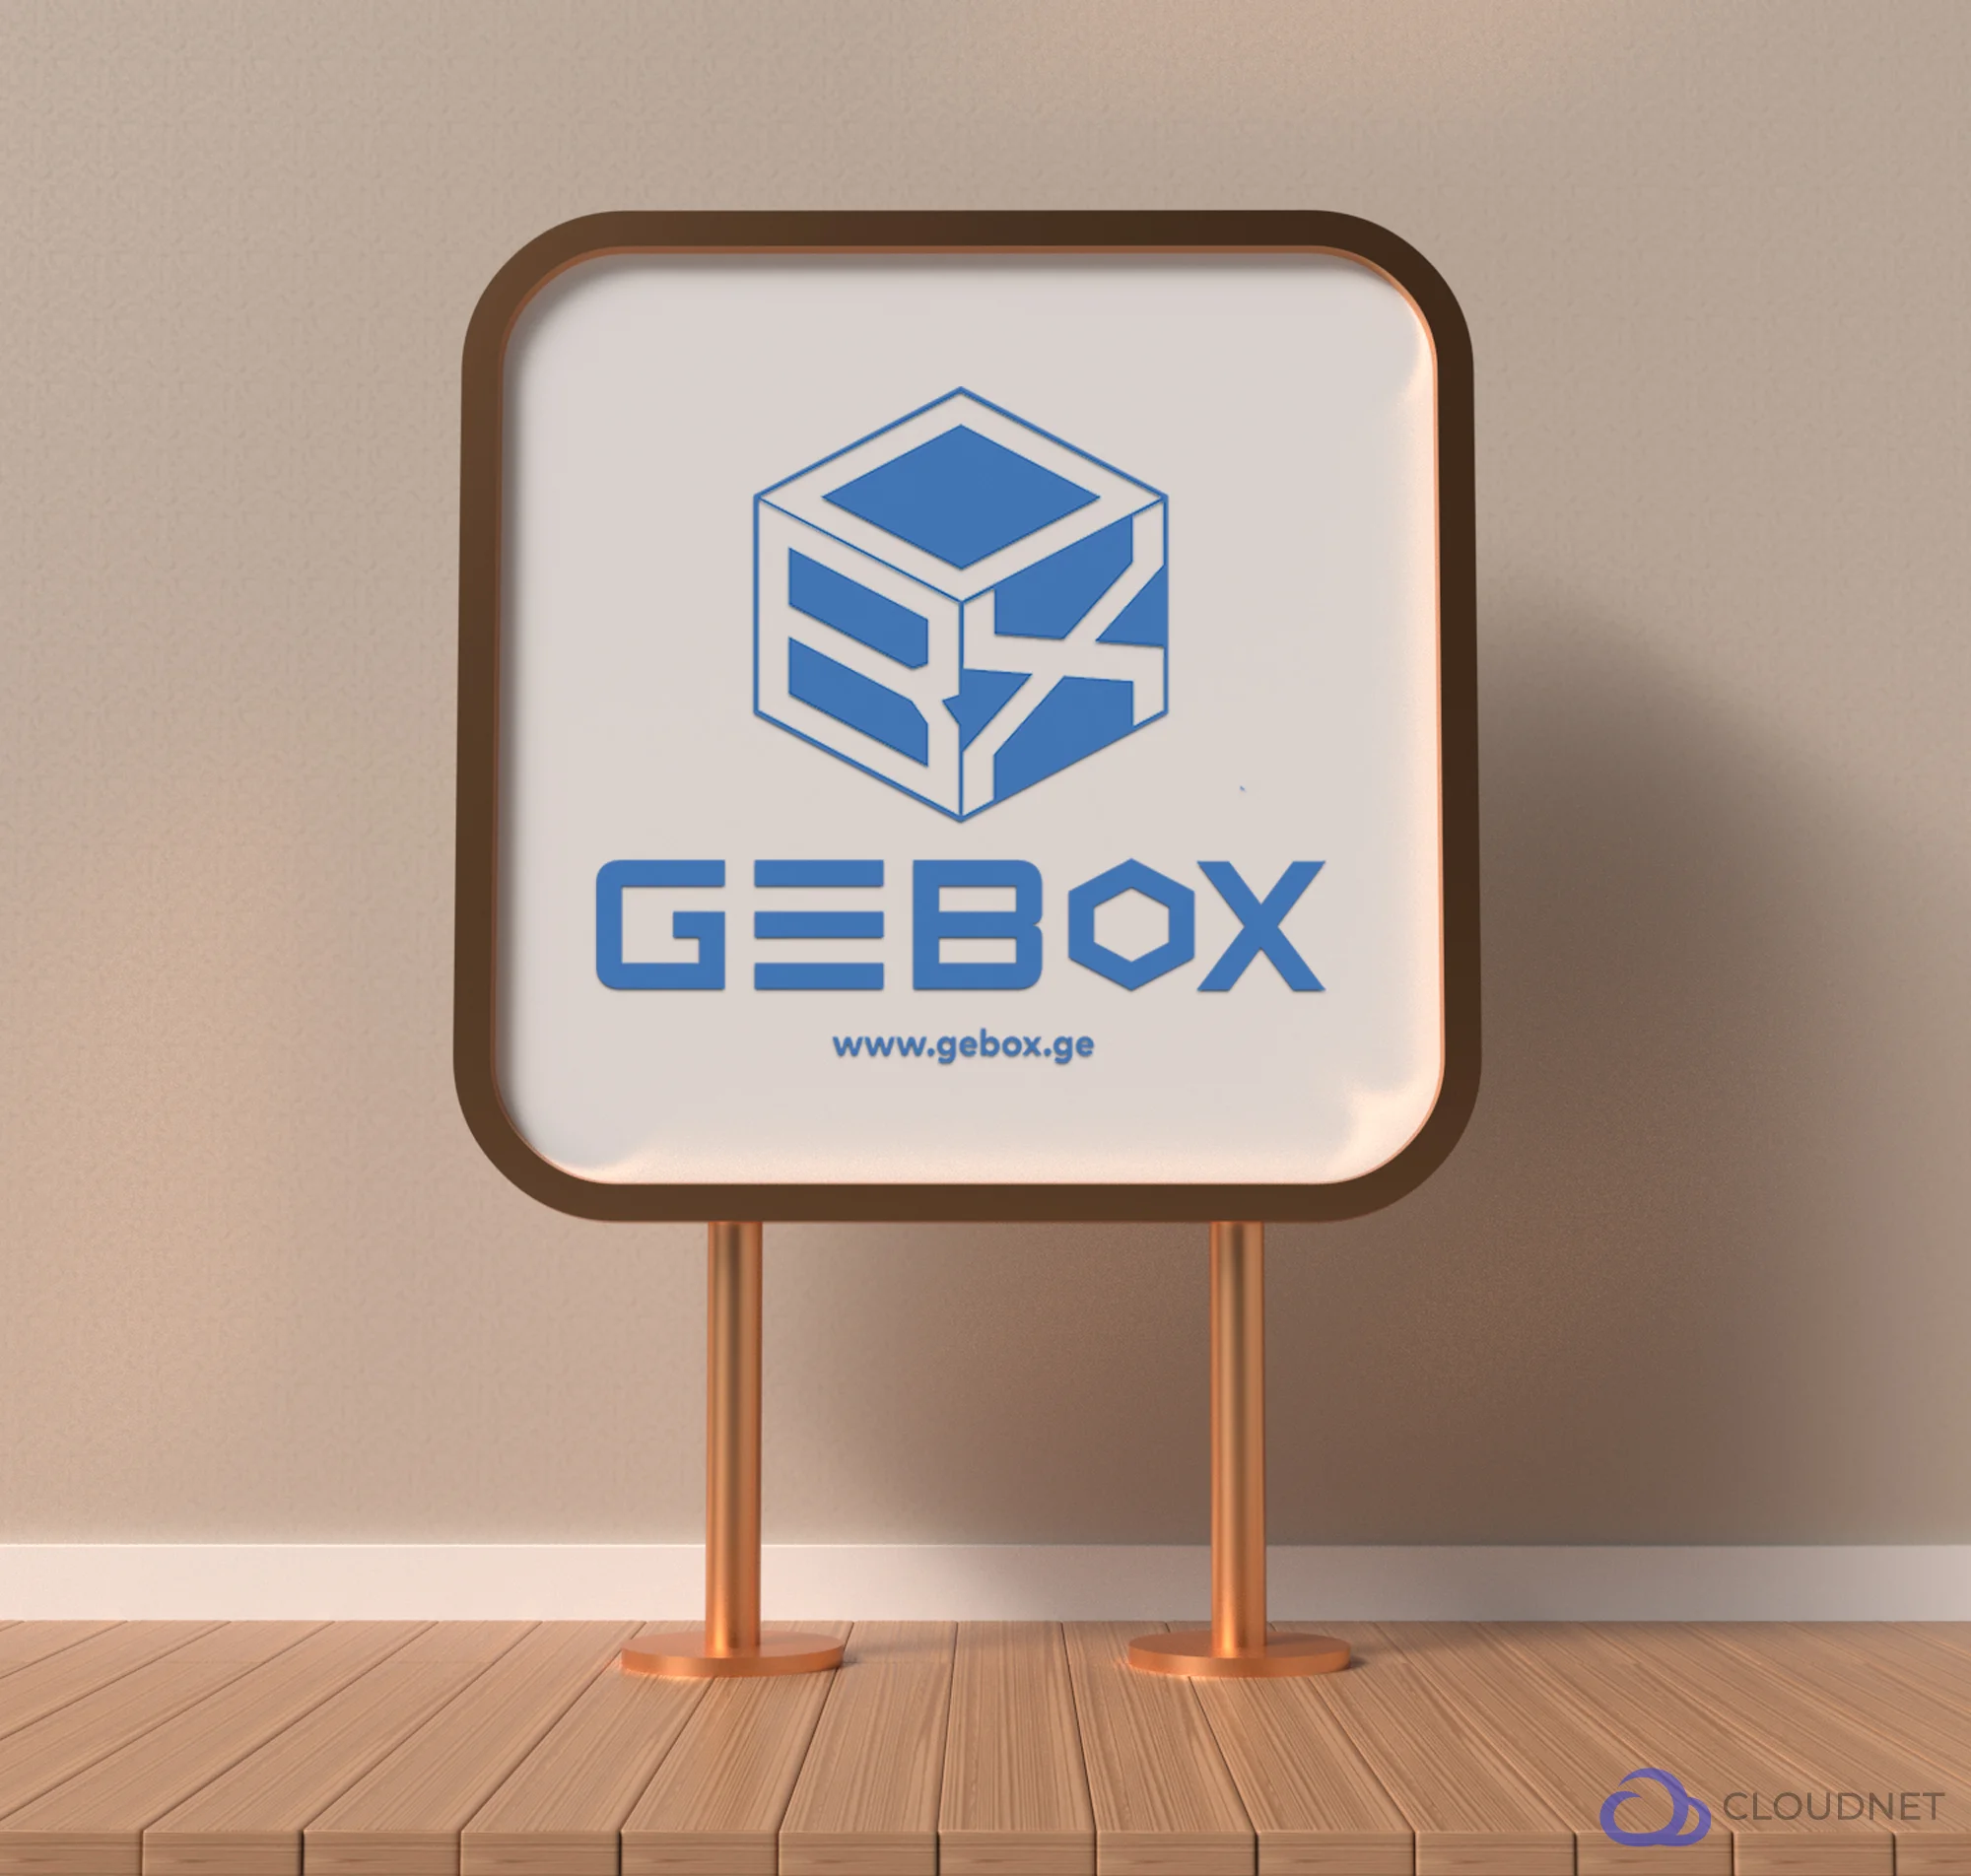 GE-BOX